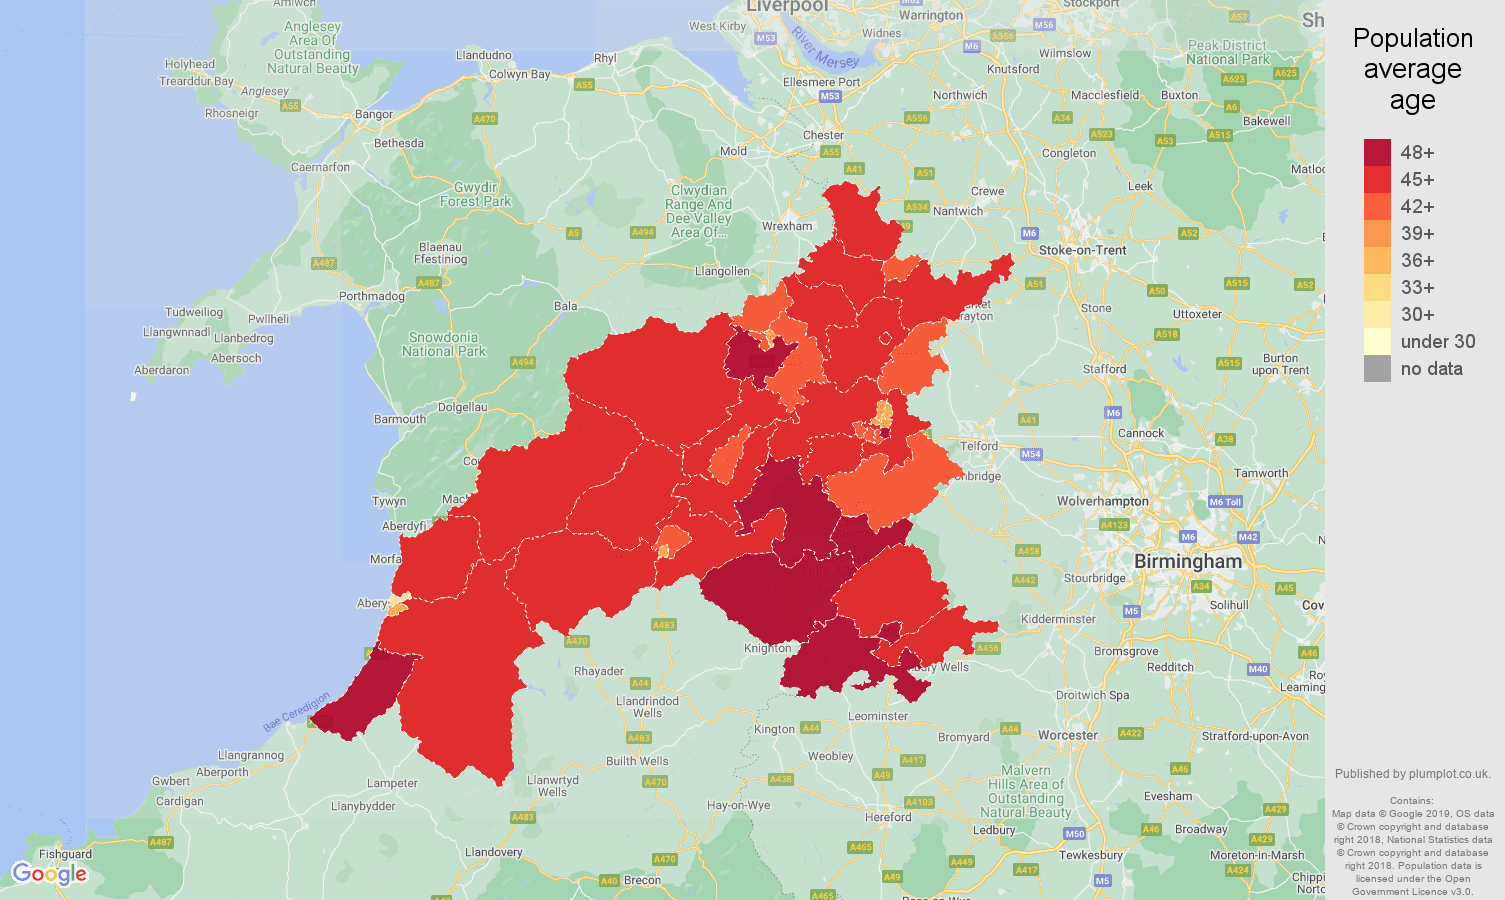 Shrewsbury population average age map